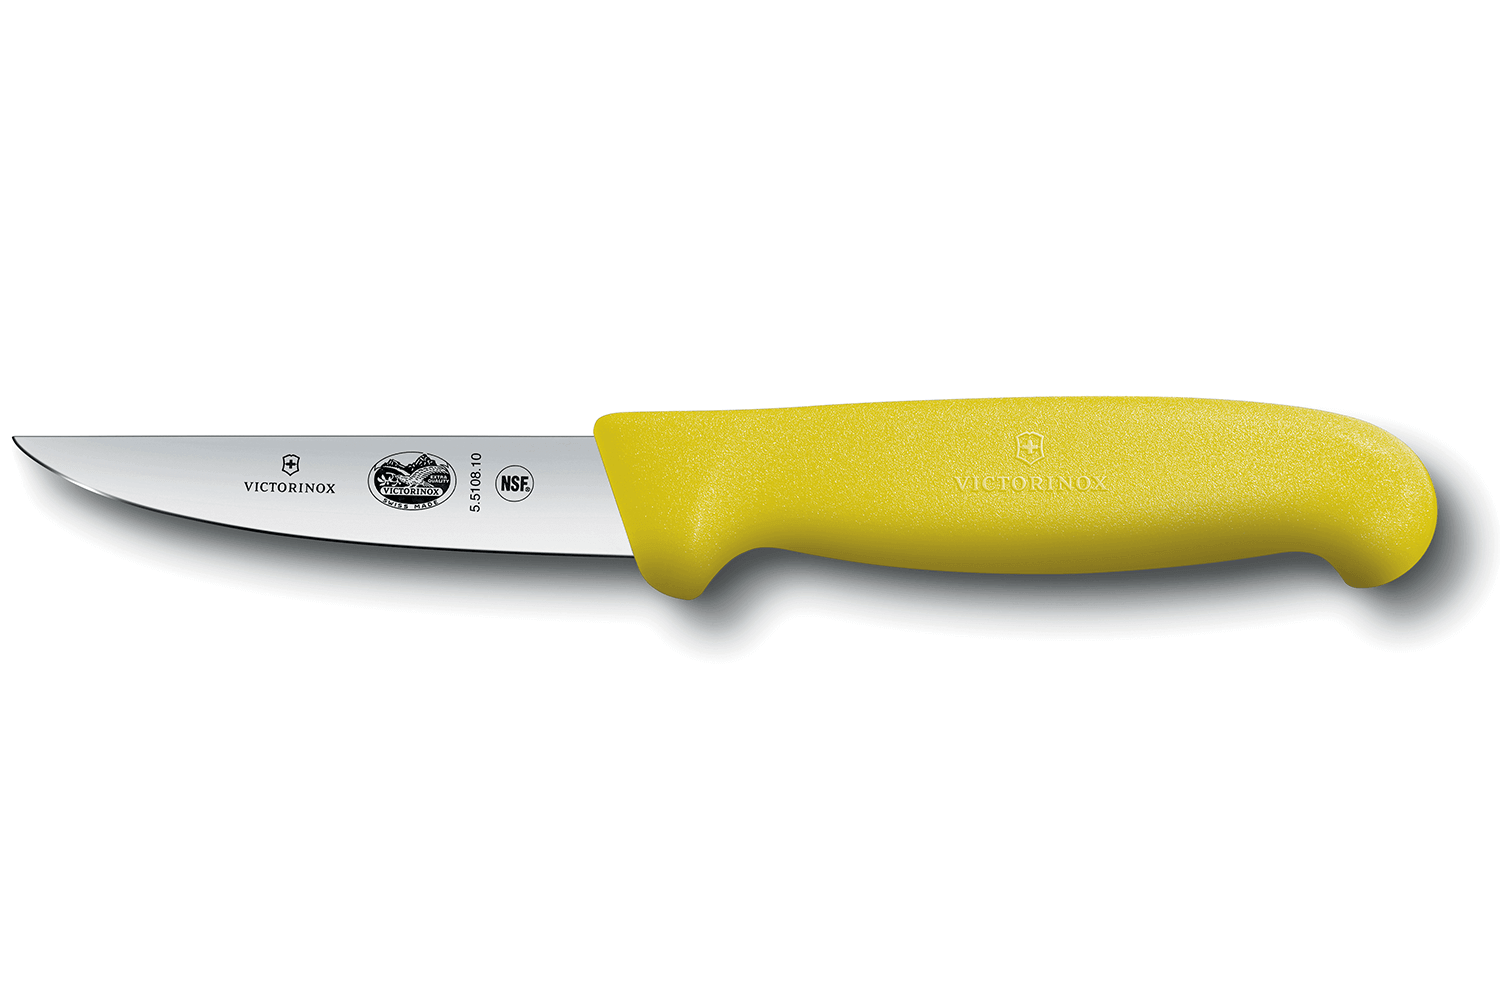 Couteau-scie à pâte - GW-7108 — iBoulange